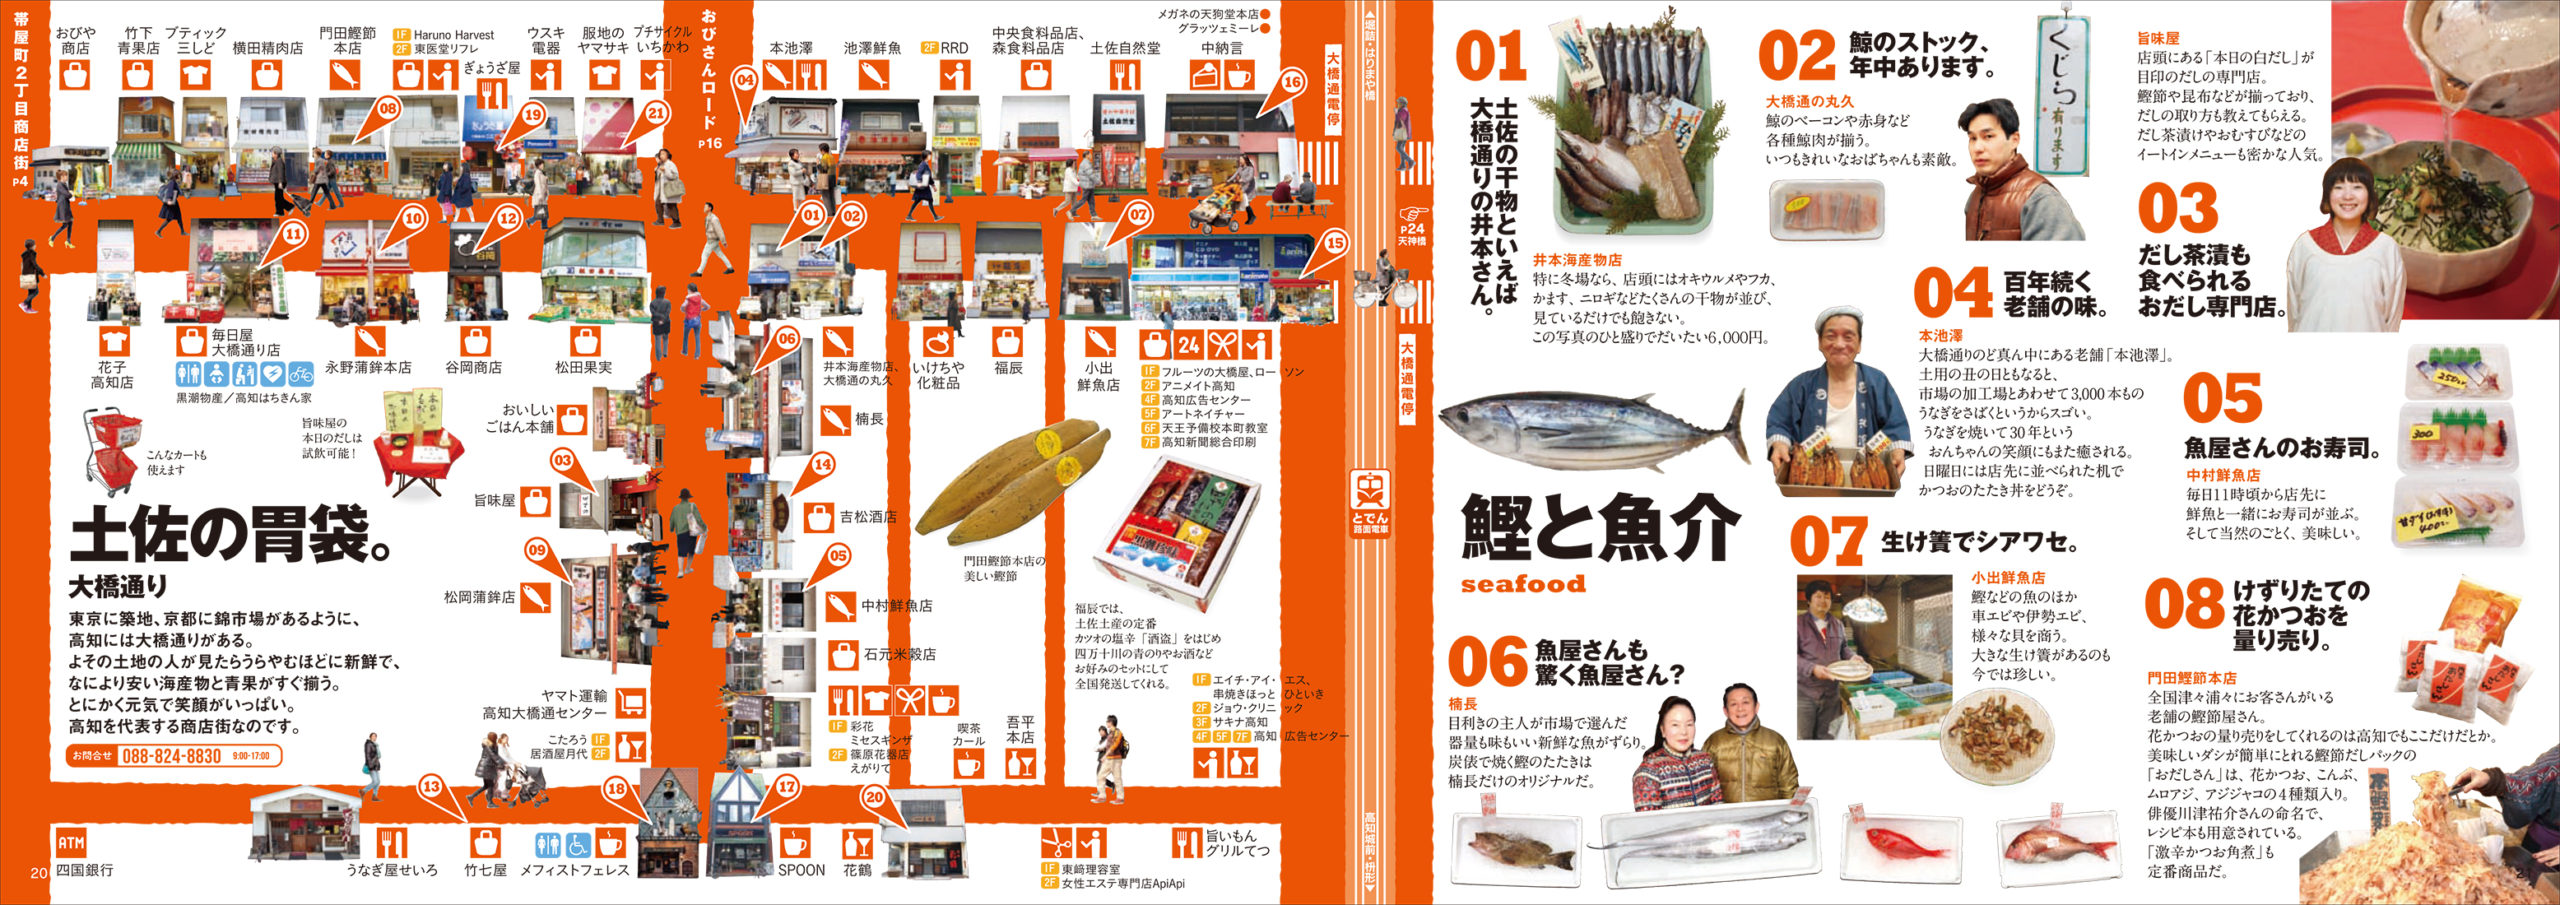 高知市中心街再開発協議会『OBIBURA MAP』